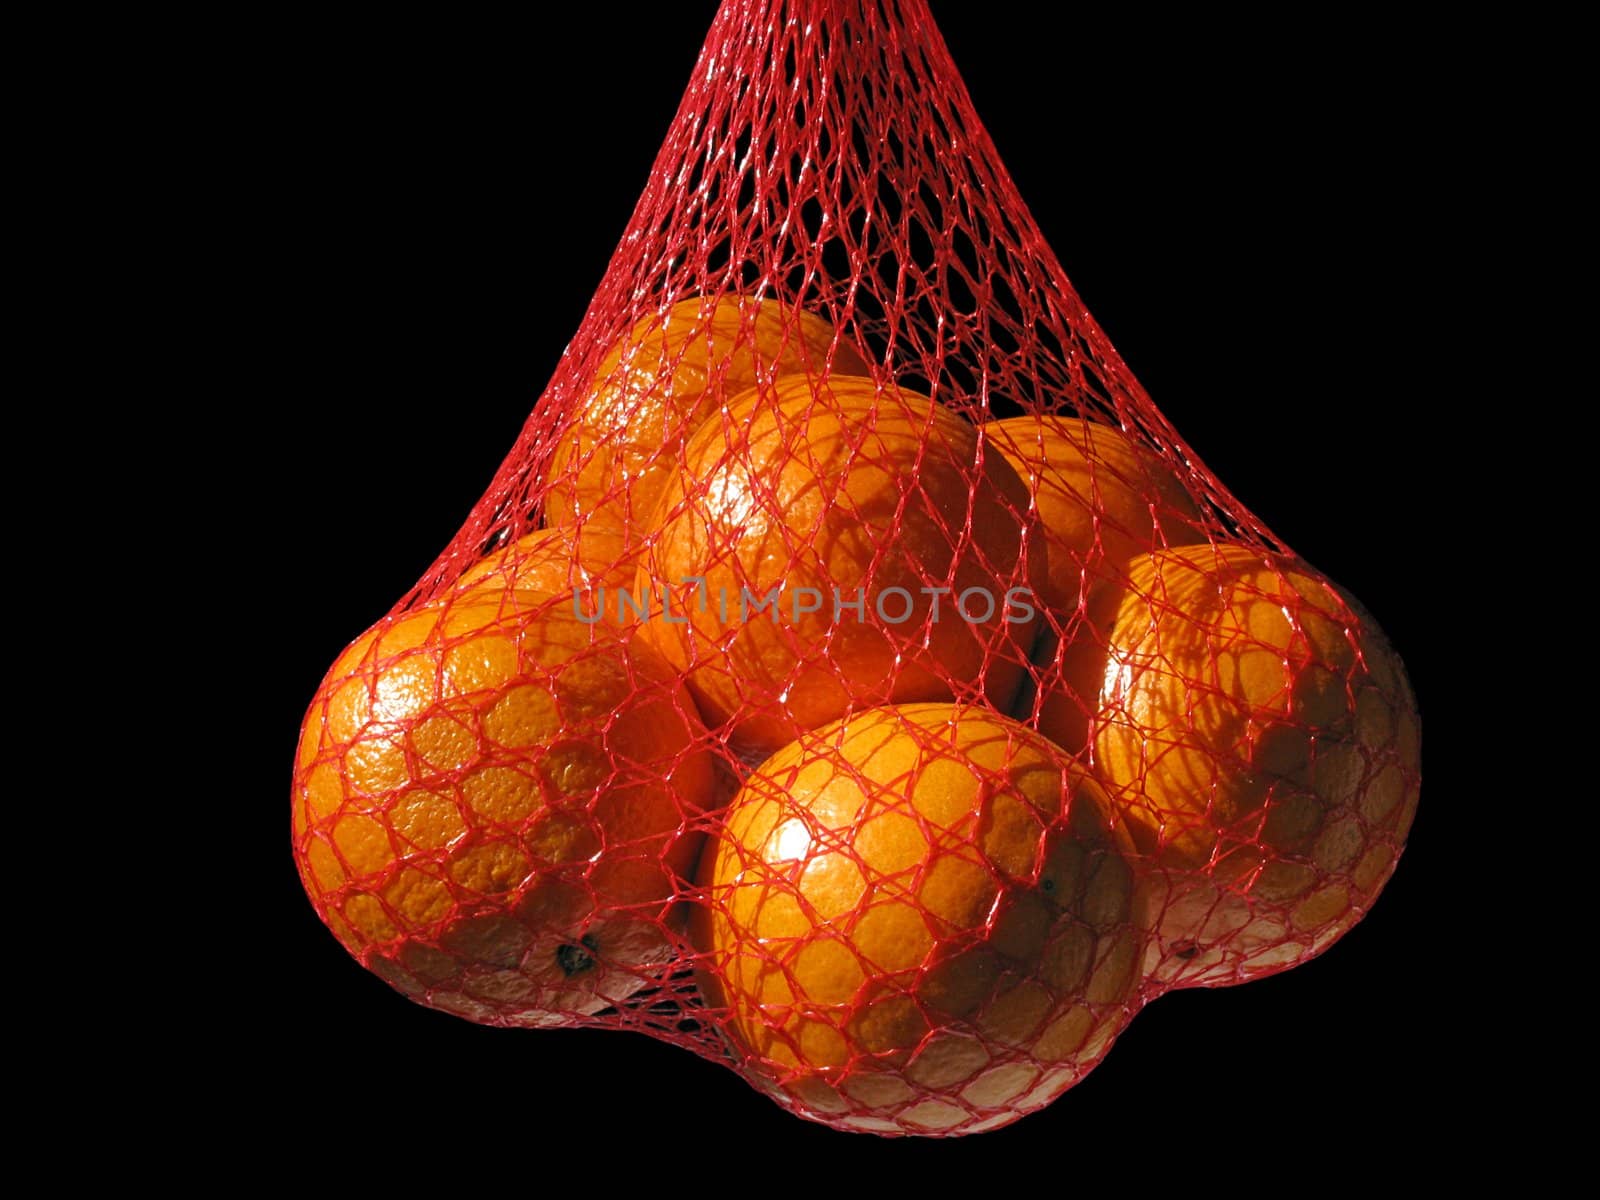 oranges in a string-bag over black